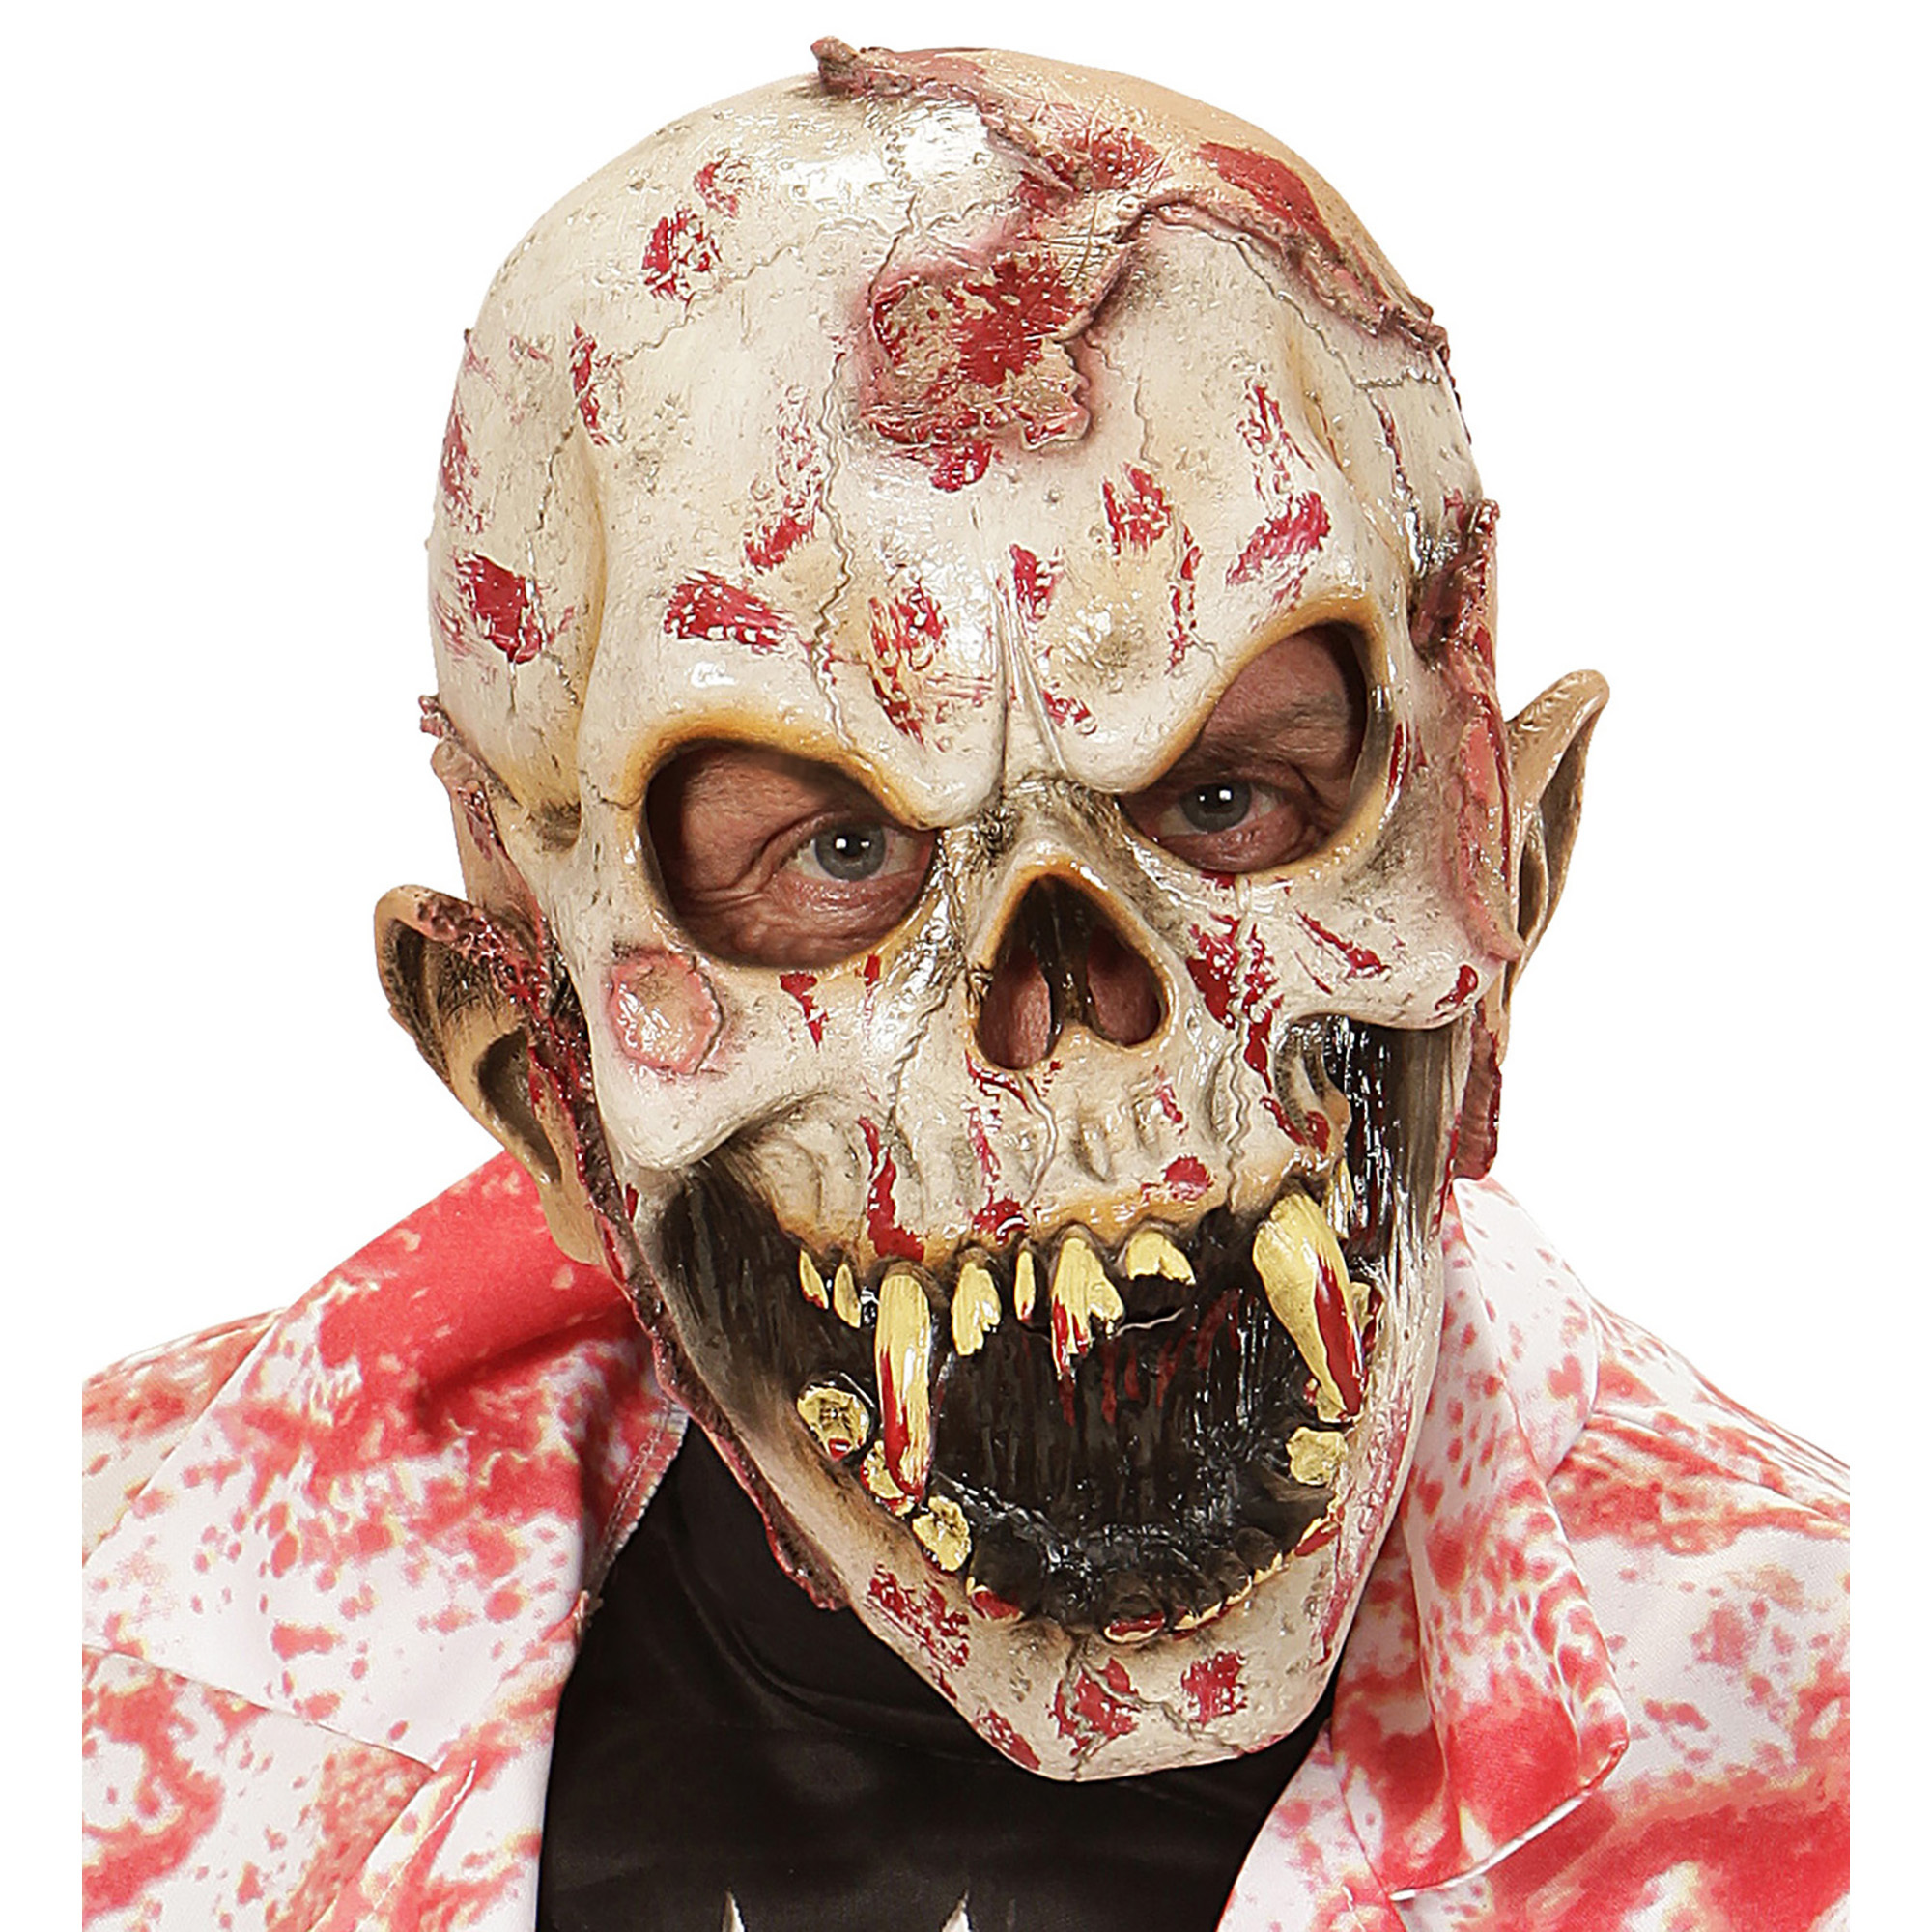 Bloederig zombie masker bebloede mensen eter